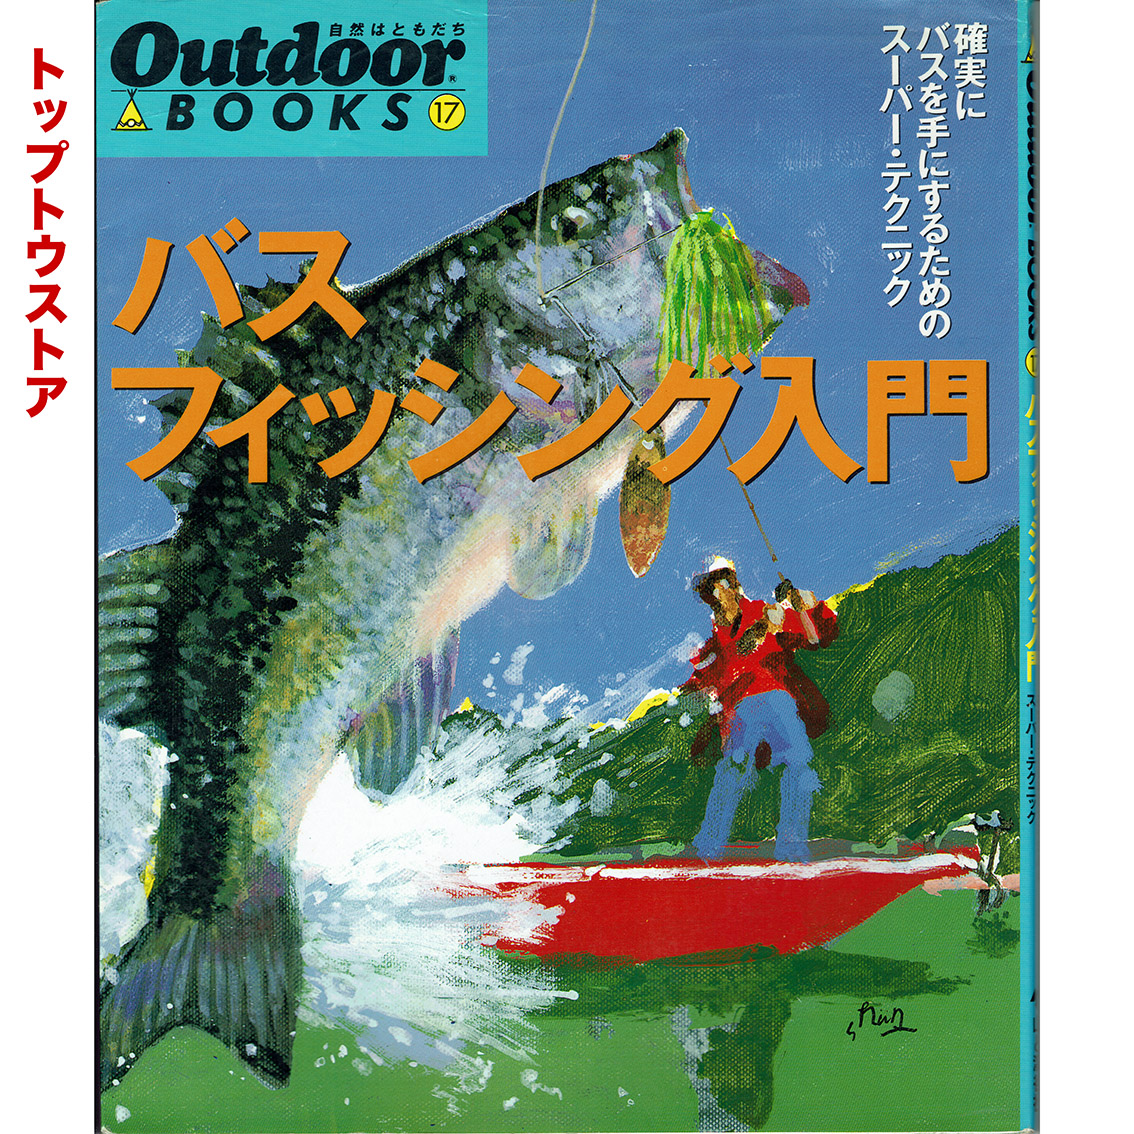 中古 山と渓谷社 Outdoorbooks17 バスフィッシング入門 トップトウストア トップウォーターバスフィッシング に特化した日本で唯一の雑誌 トップトウ の公式オンラインストアです